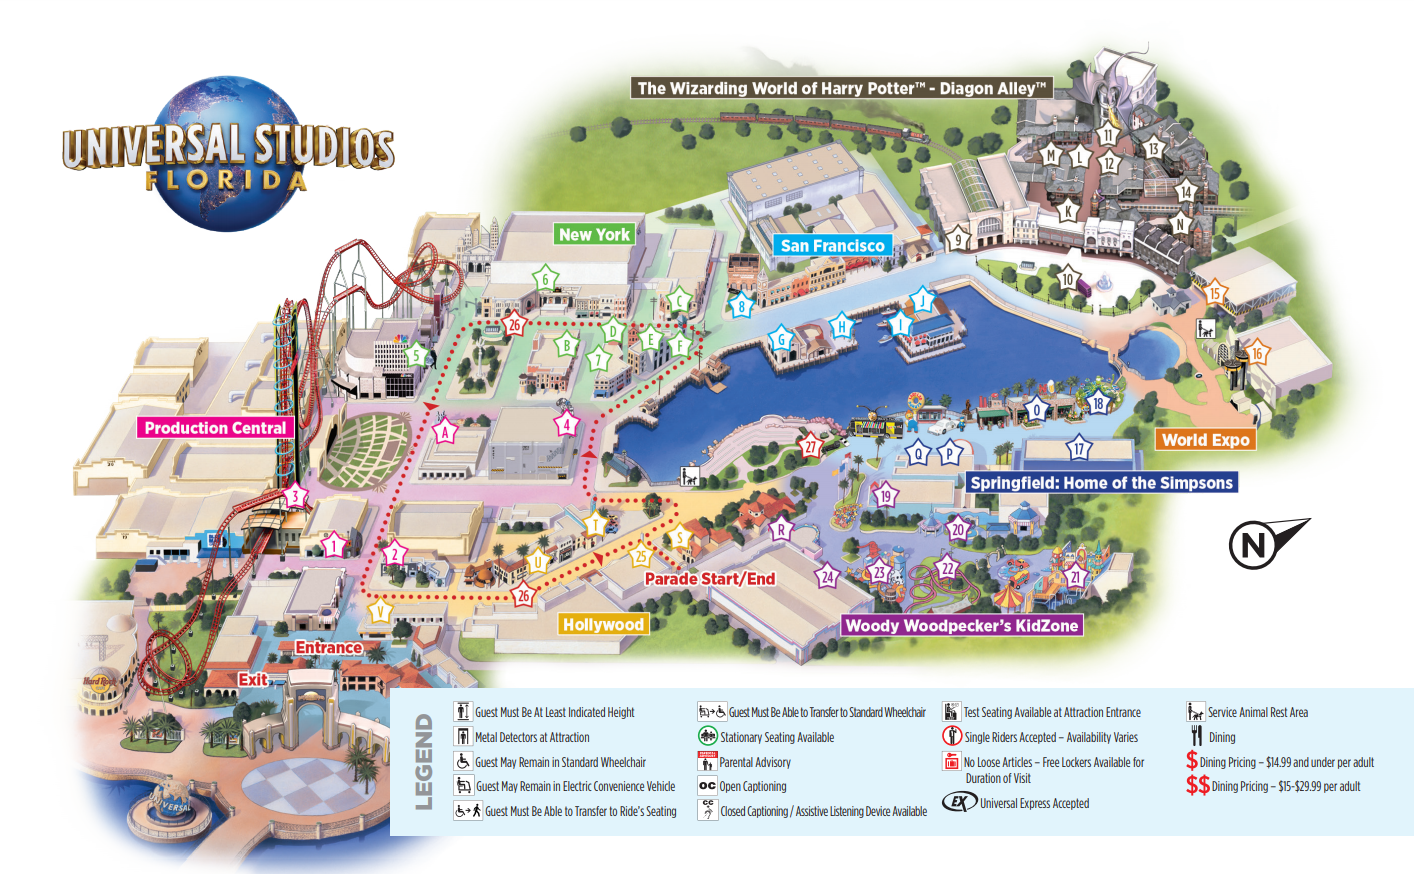 Dies ist die Parkkarte der Universal Studios Florida. Shrek 4-D befindet sich in "Produktionszentrale".